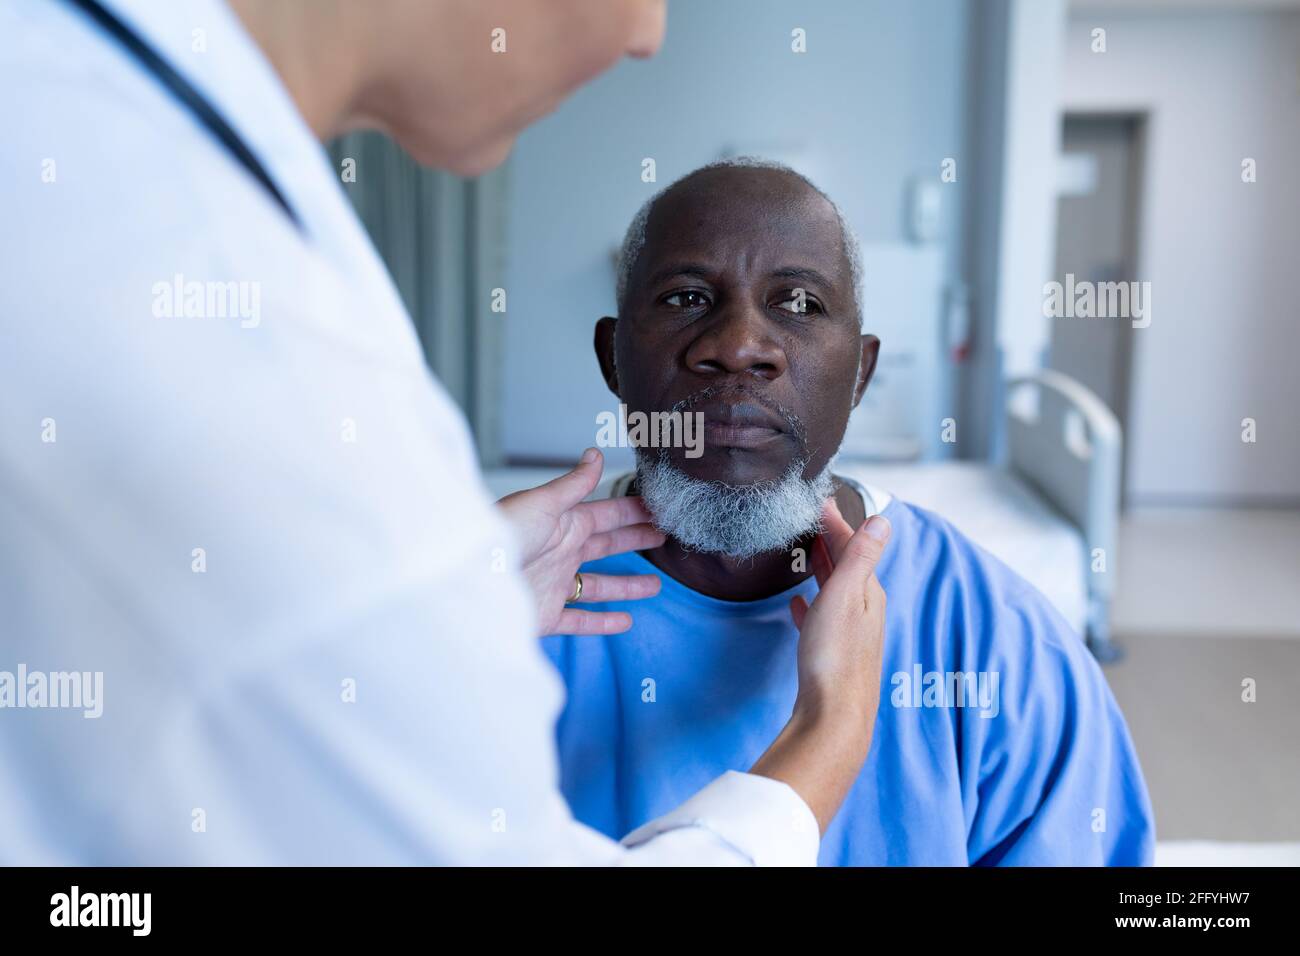 Femme caucasienne médecin palpating ganglions lymphatiques de l'homme afro-américain patient Banque D'Images